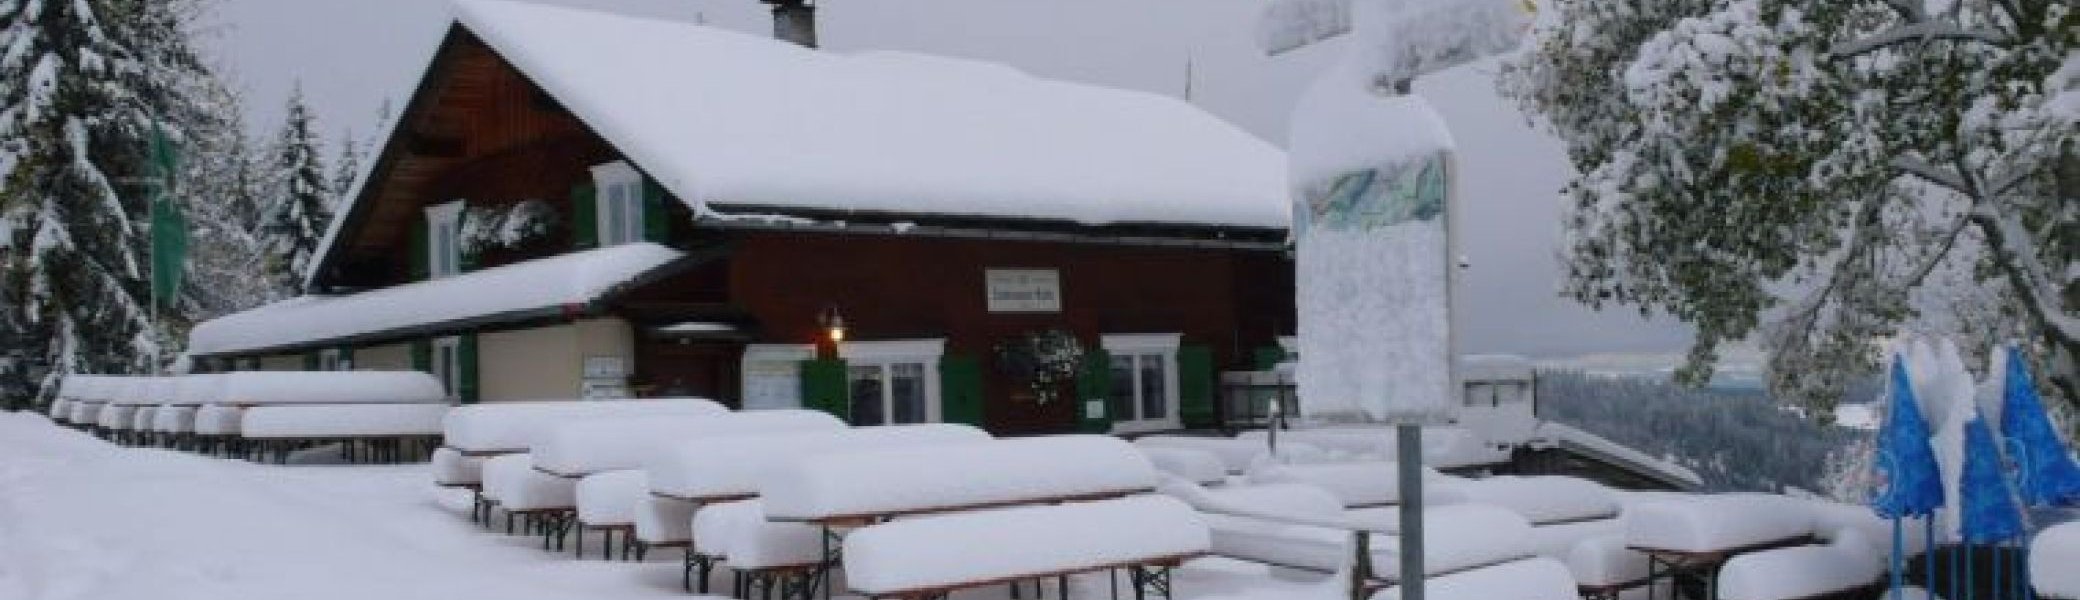 Lustenauer Hütte im Winter | © © Österreichischer Alpenverein, Lustenauer Hütte